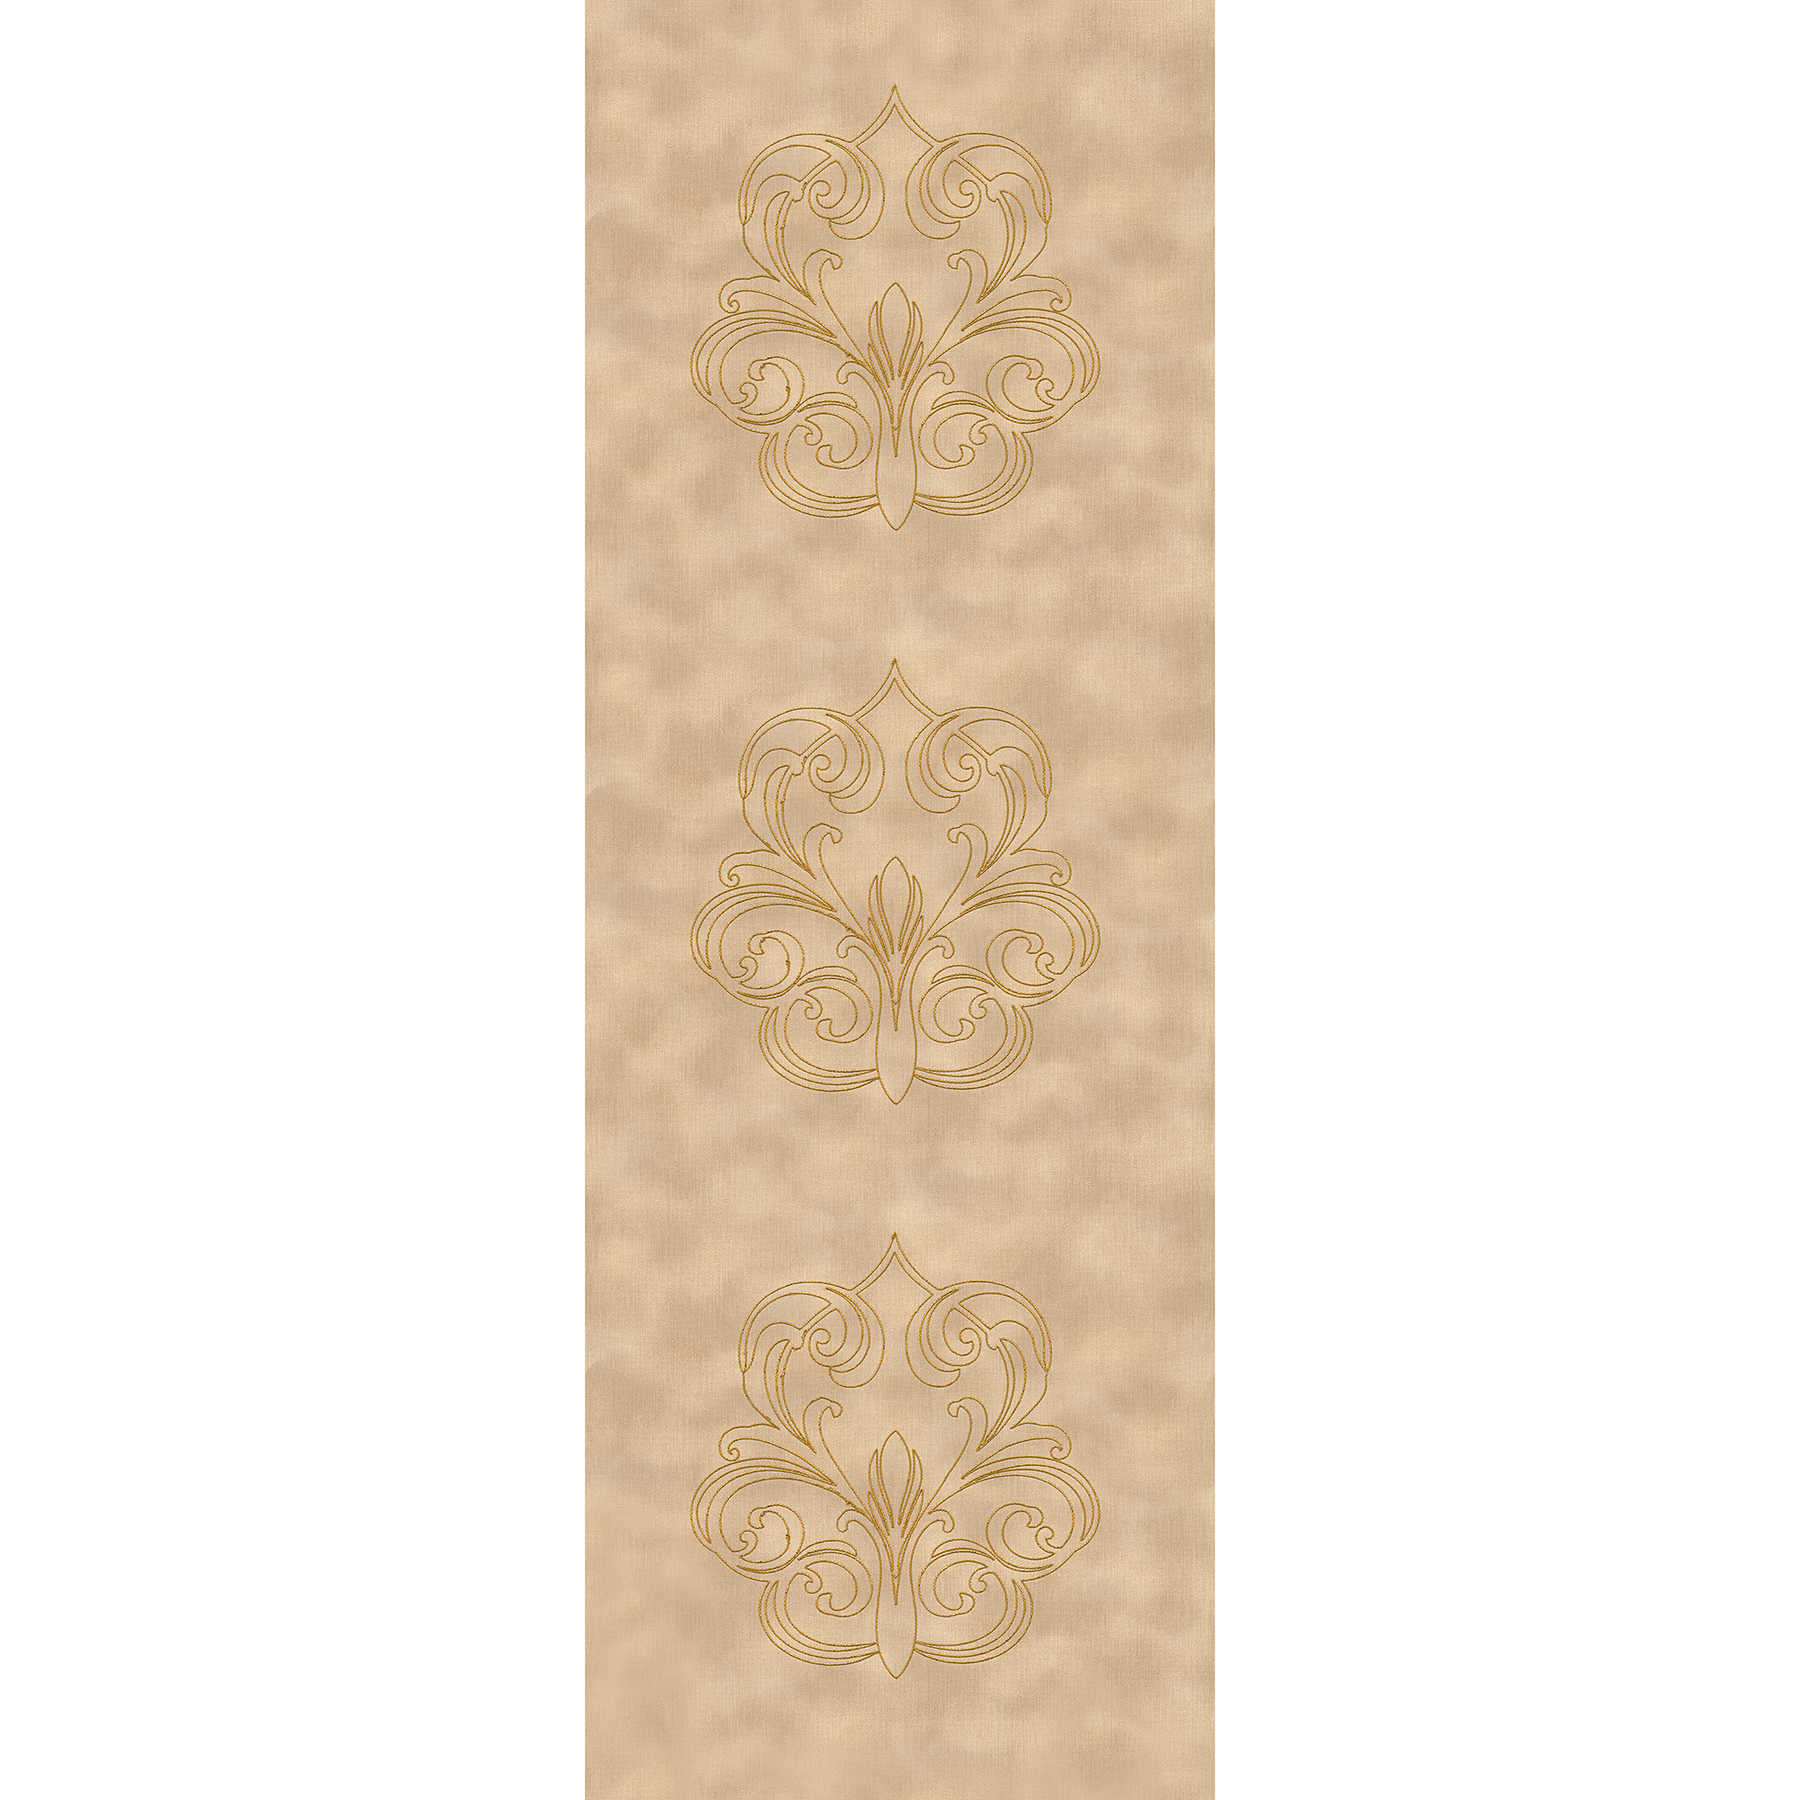         Ornament Premium-Panels im klassischen Barockstil – Braun, Gold
    